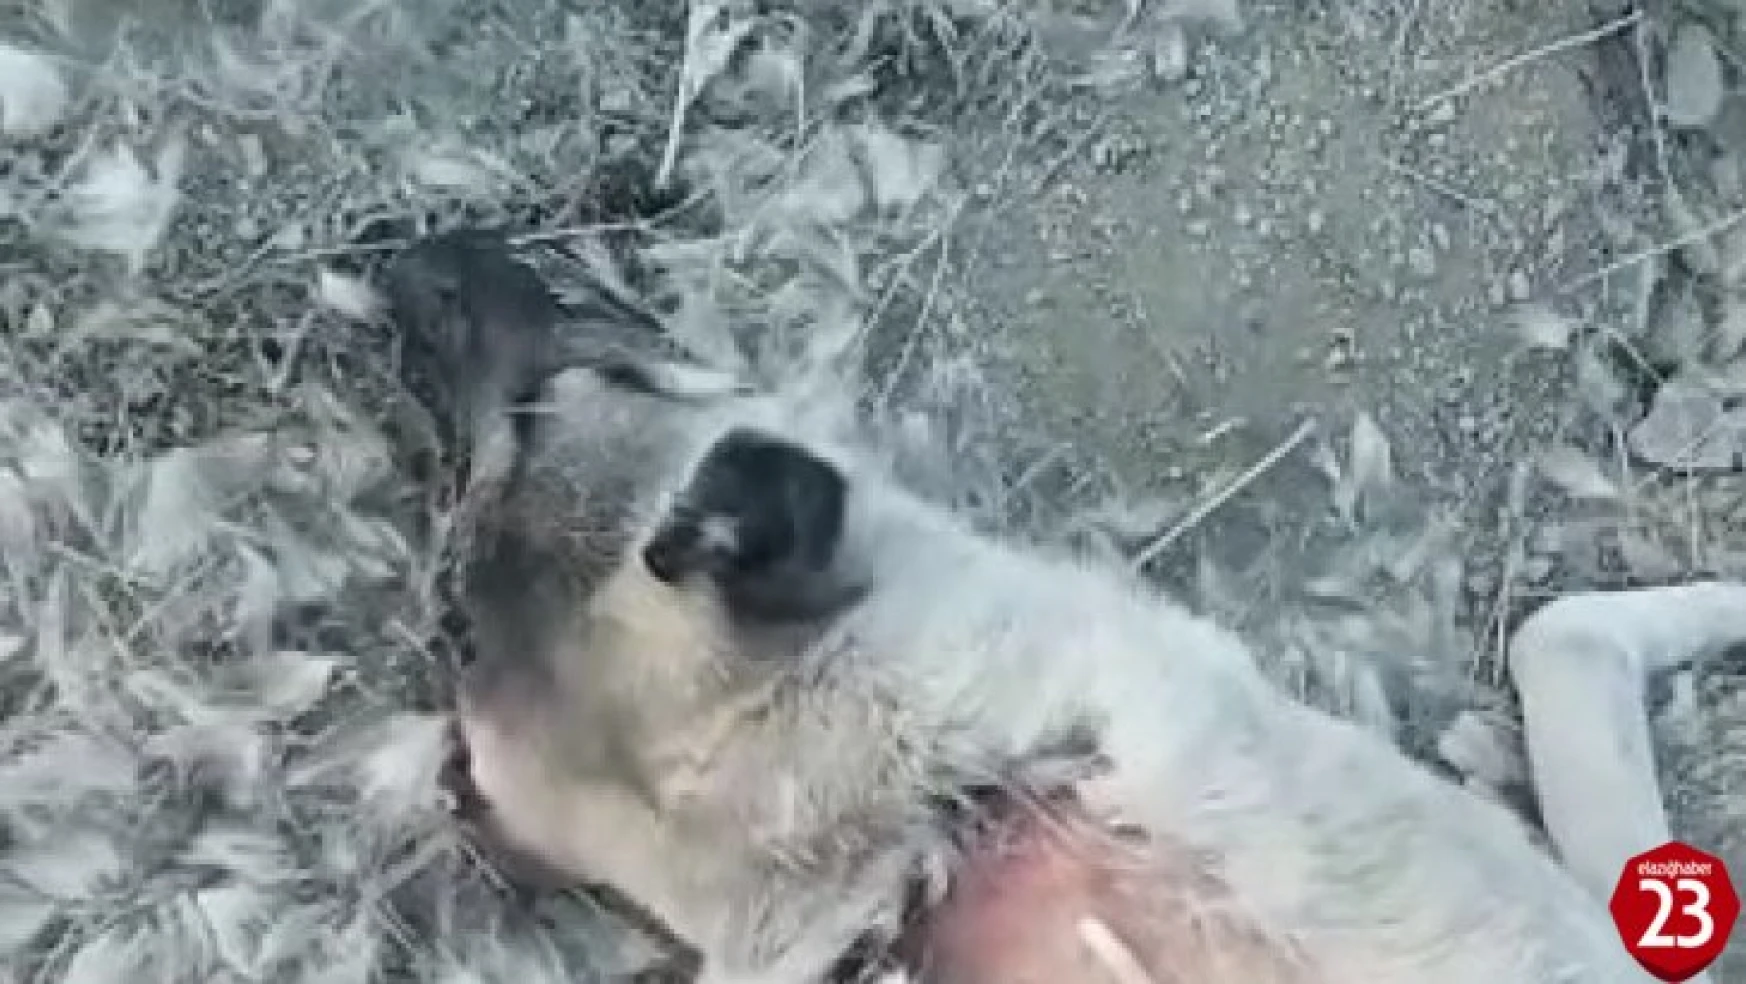 Maden'de Zehirlenerek Öldürülen Köpekler İçin Soruşturma Başlatıldı